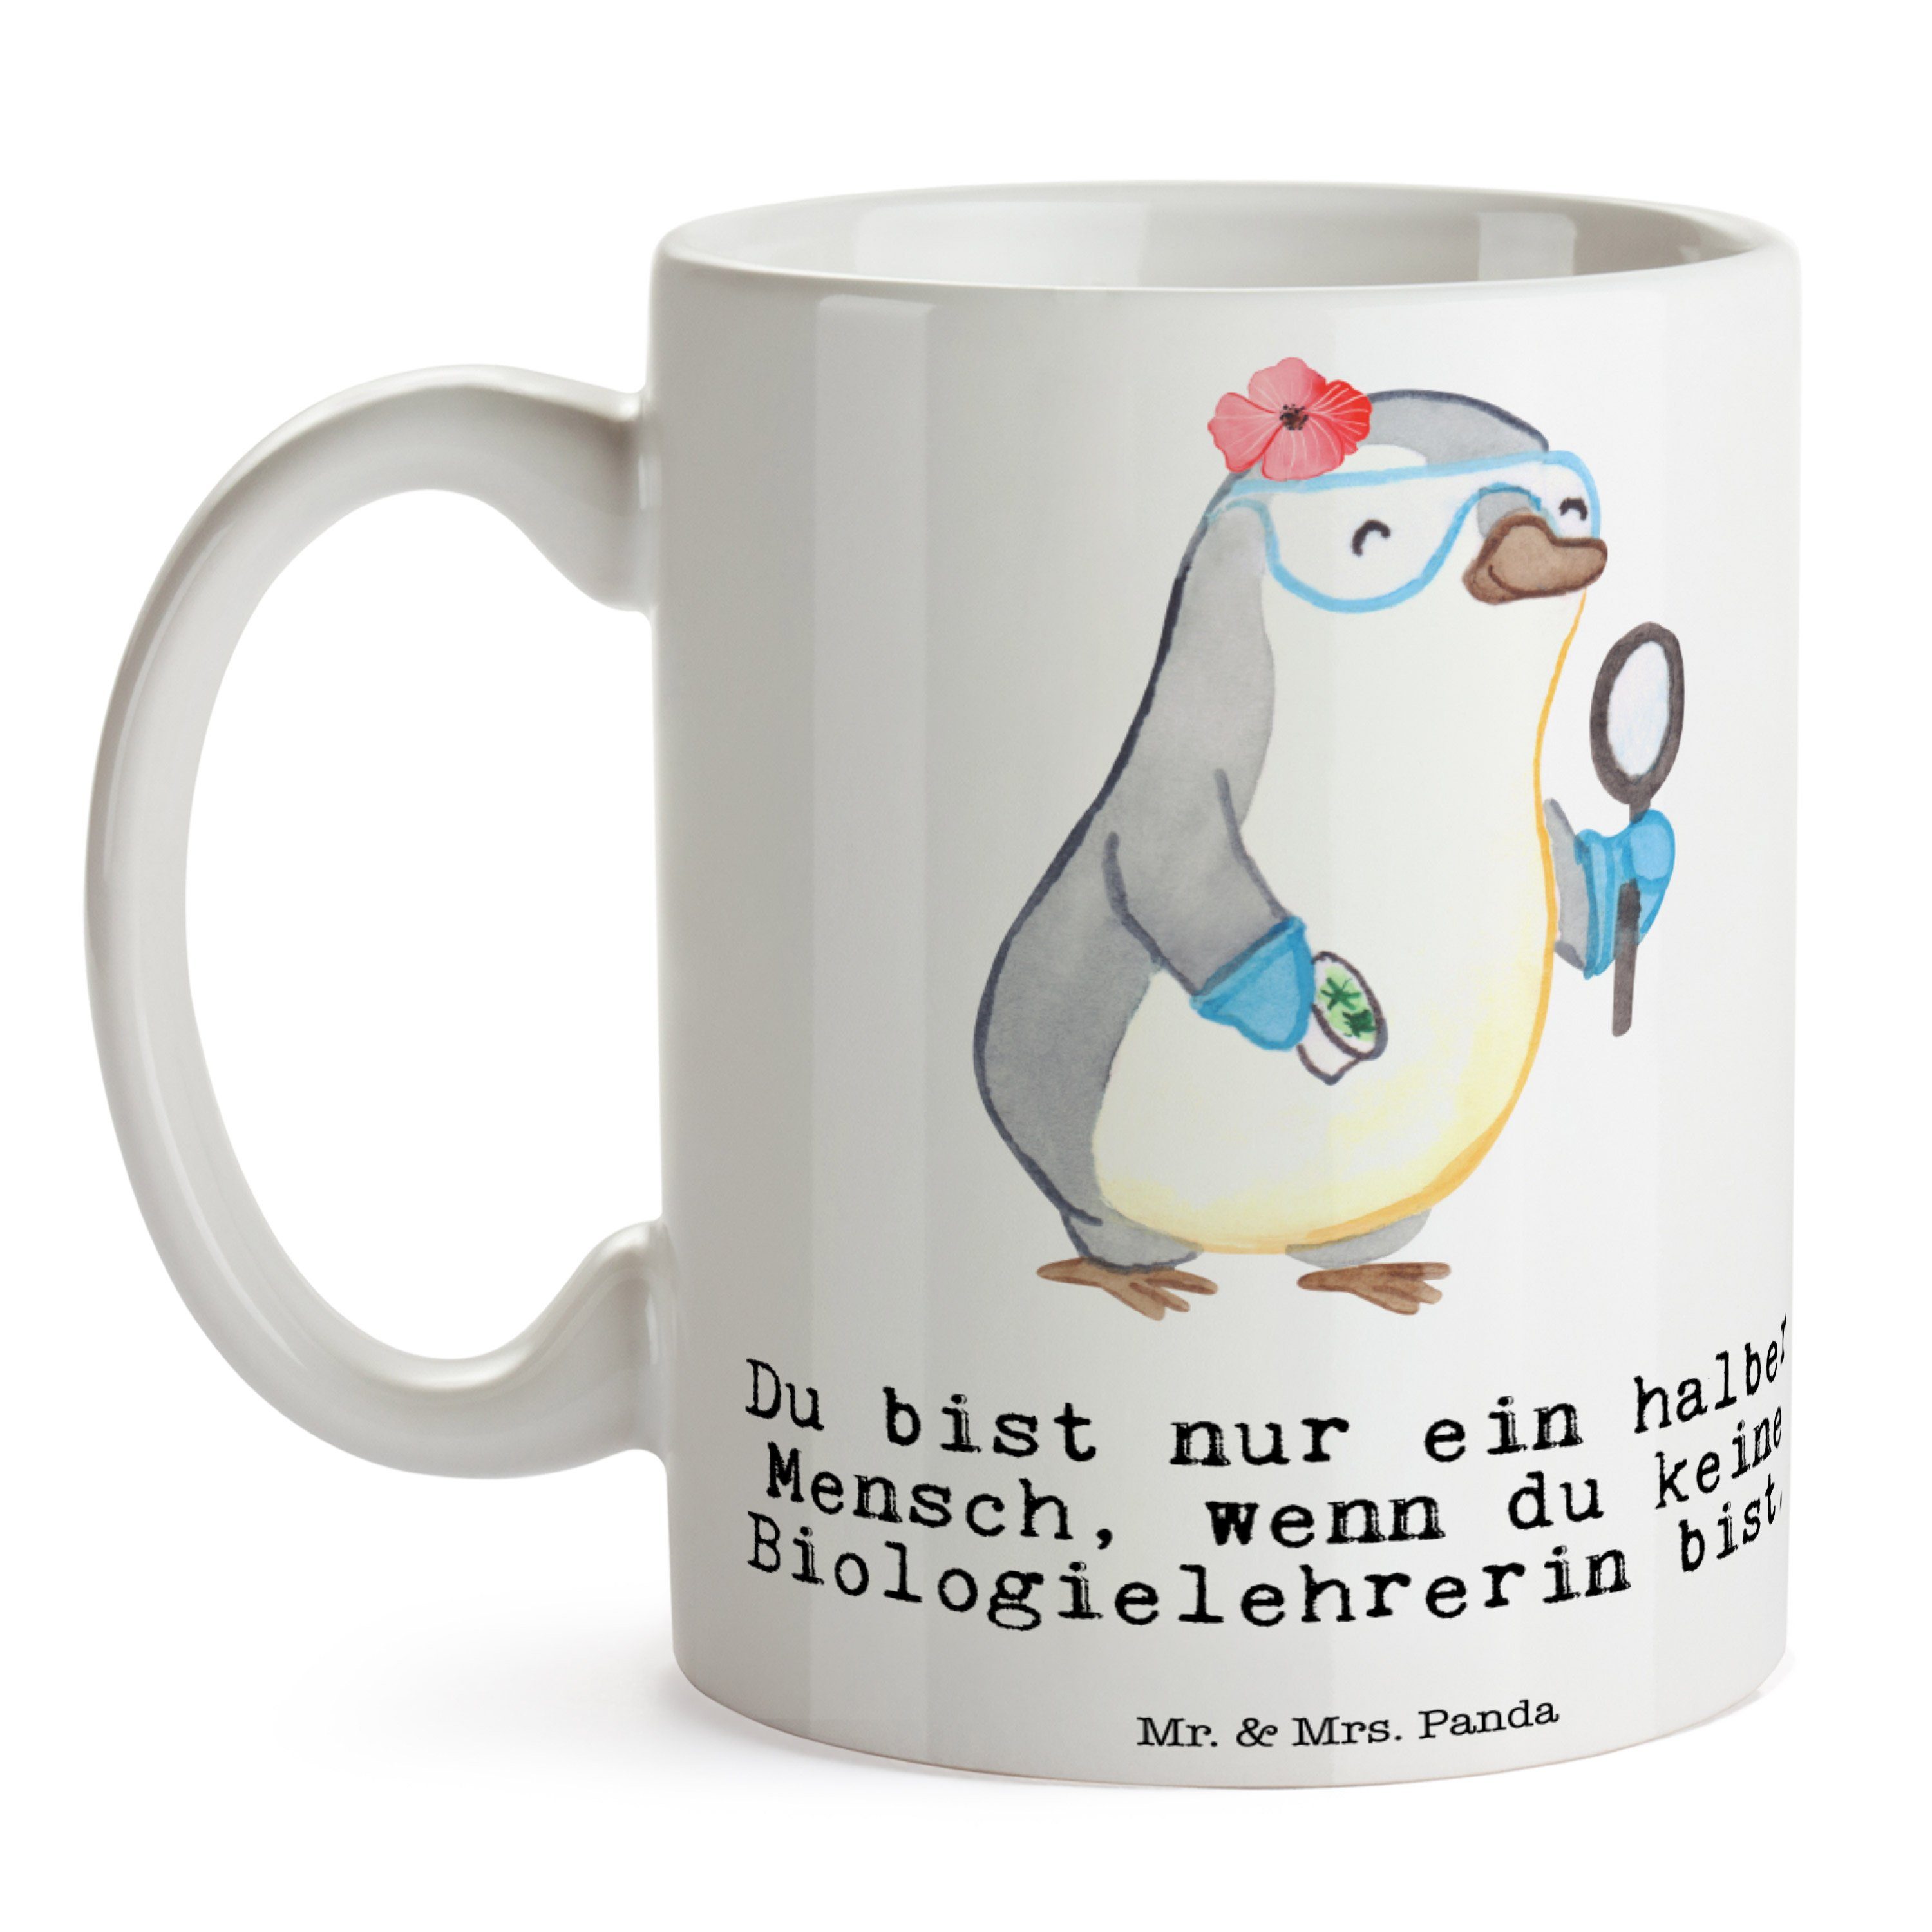 Mr. & Mrs. Panda Tasse Porzellantasse, - Geschenk, Weiß - Keramik Herz Teetasse, mit Biologielehrerin